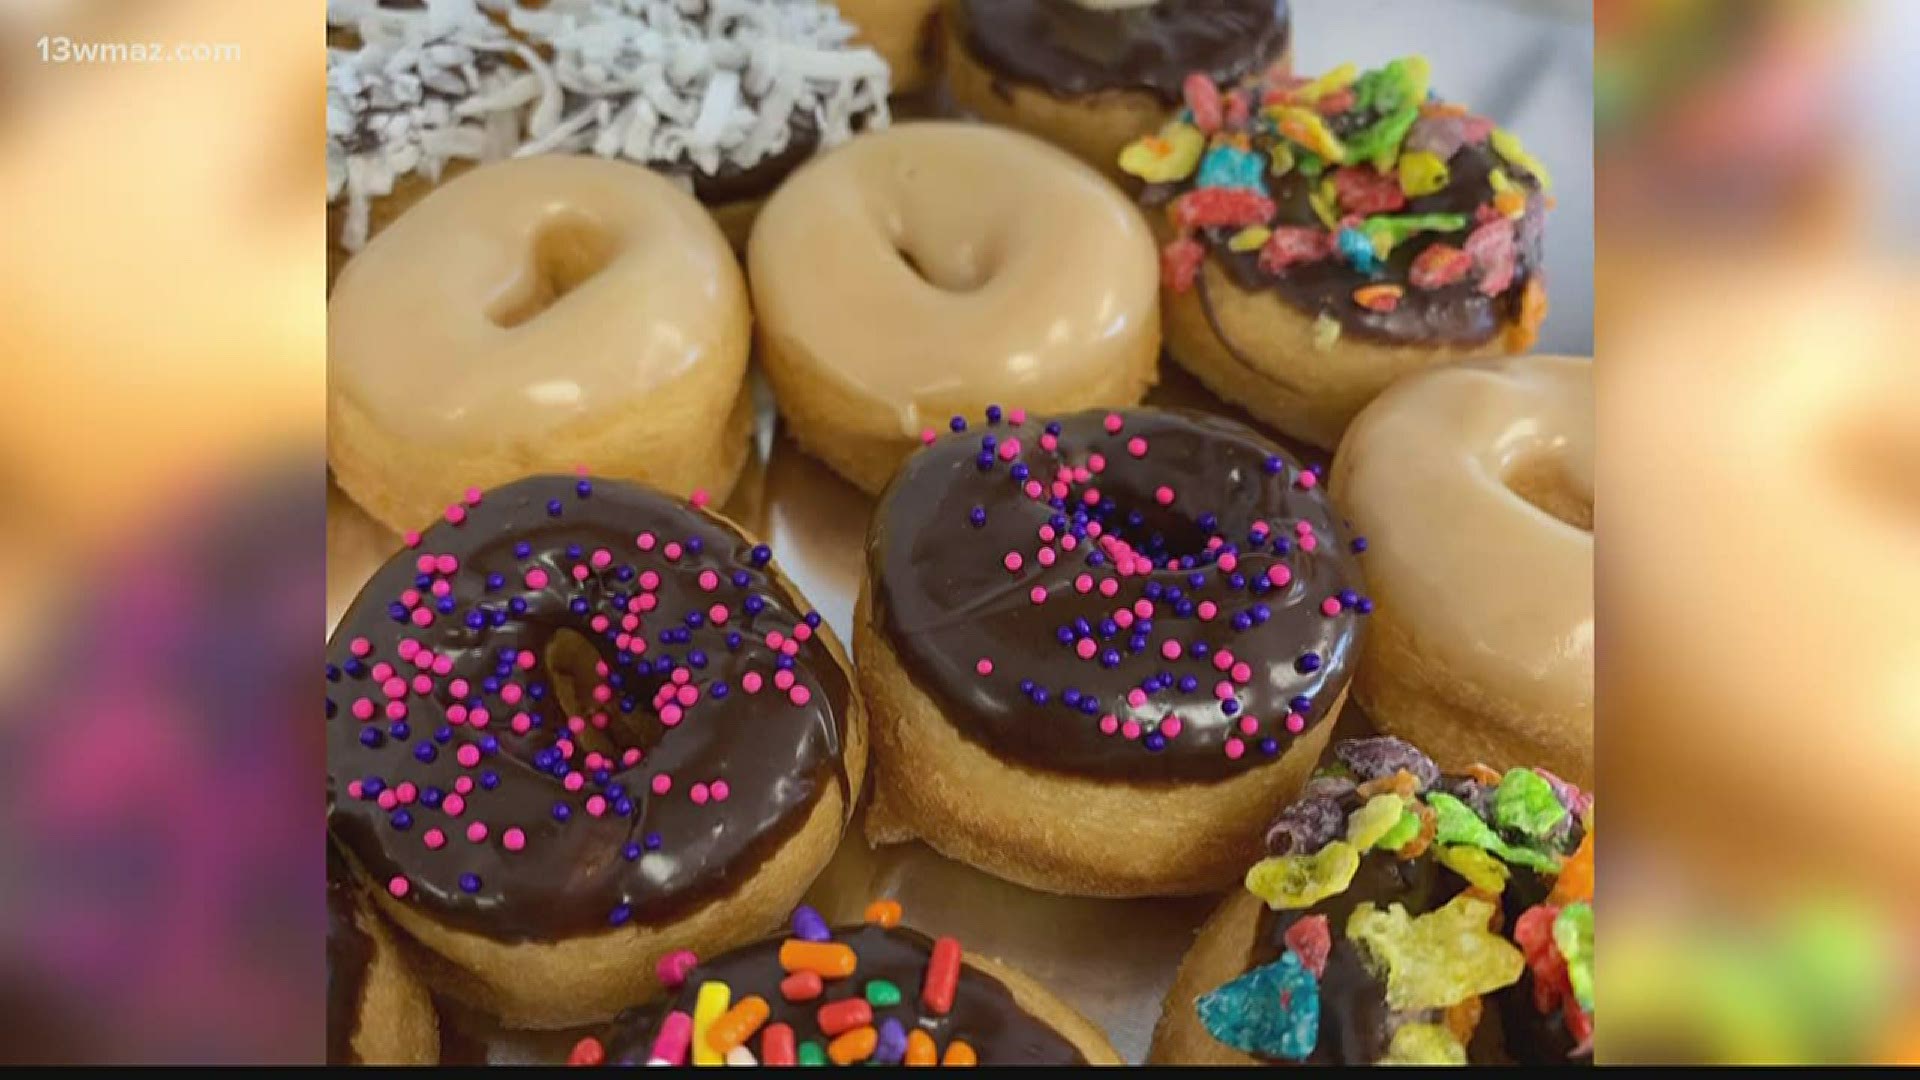 Donut Bakery Life Codes